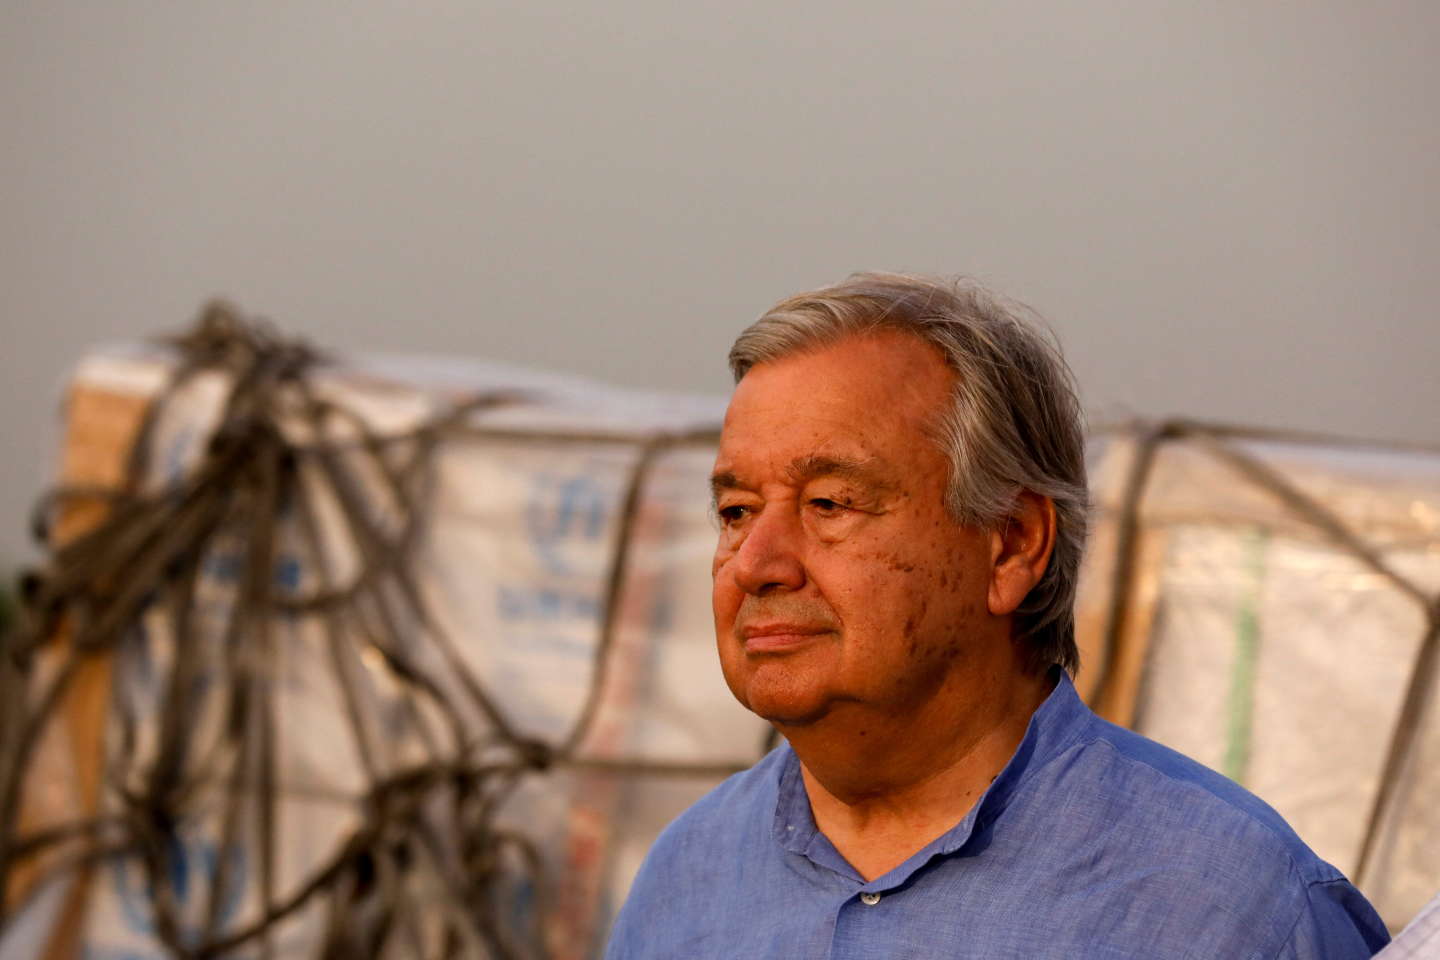 Antonio Guterres, un diplomate du climat à la tête des Nations unies